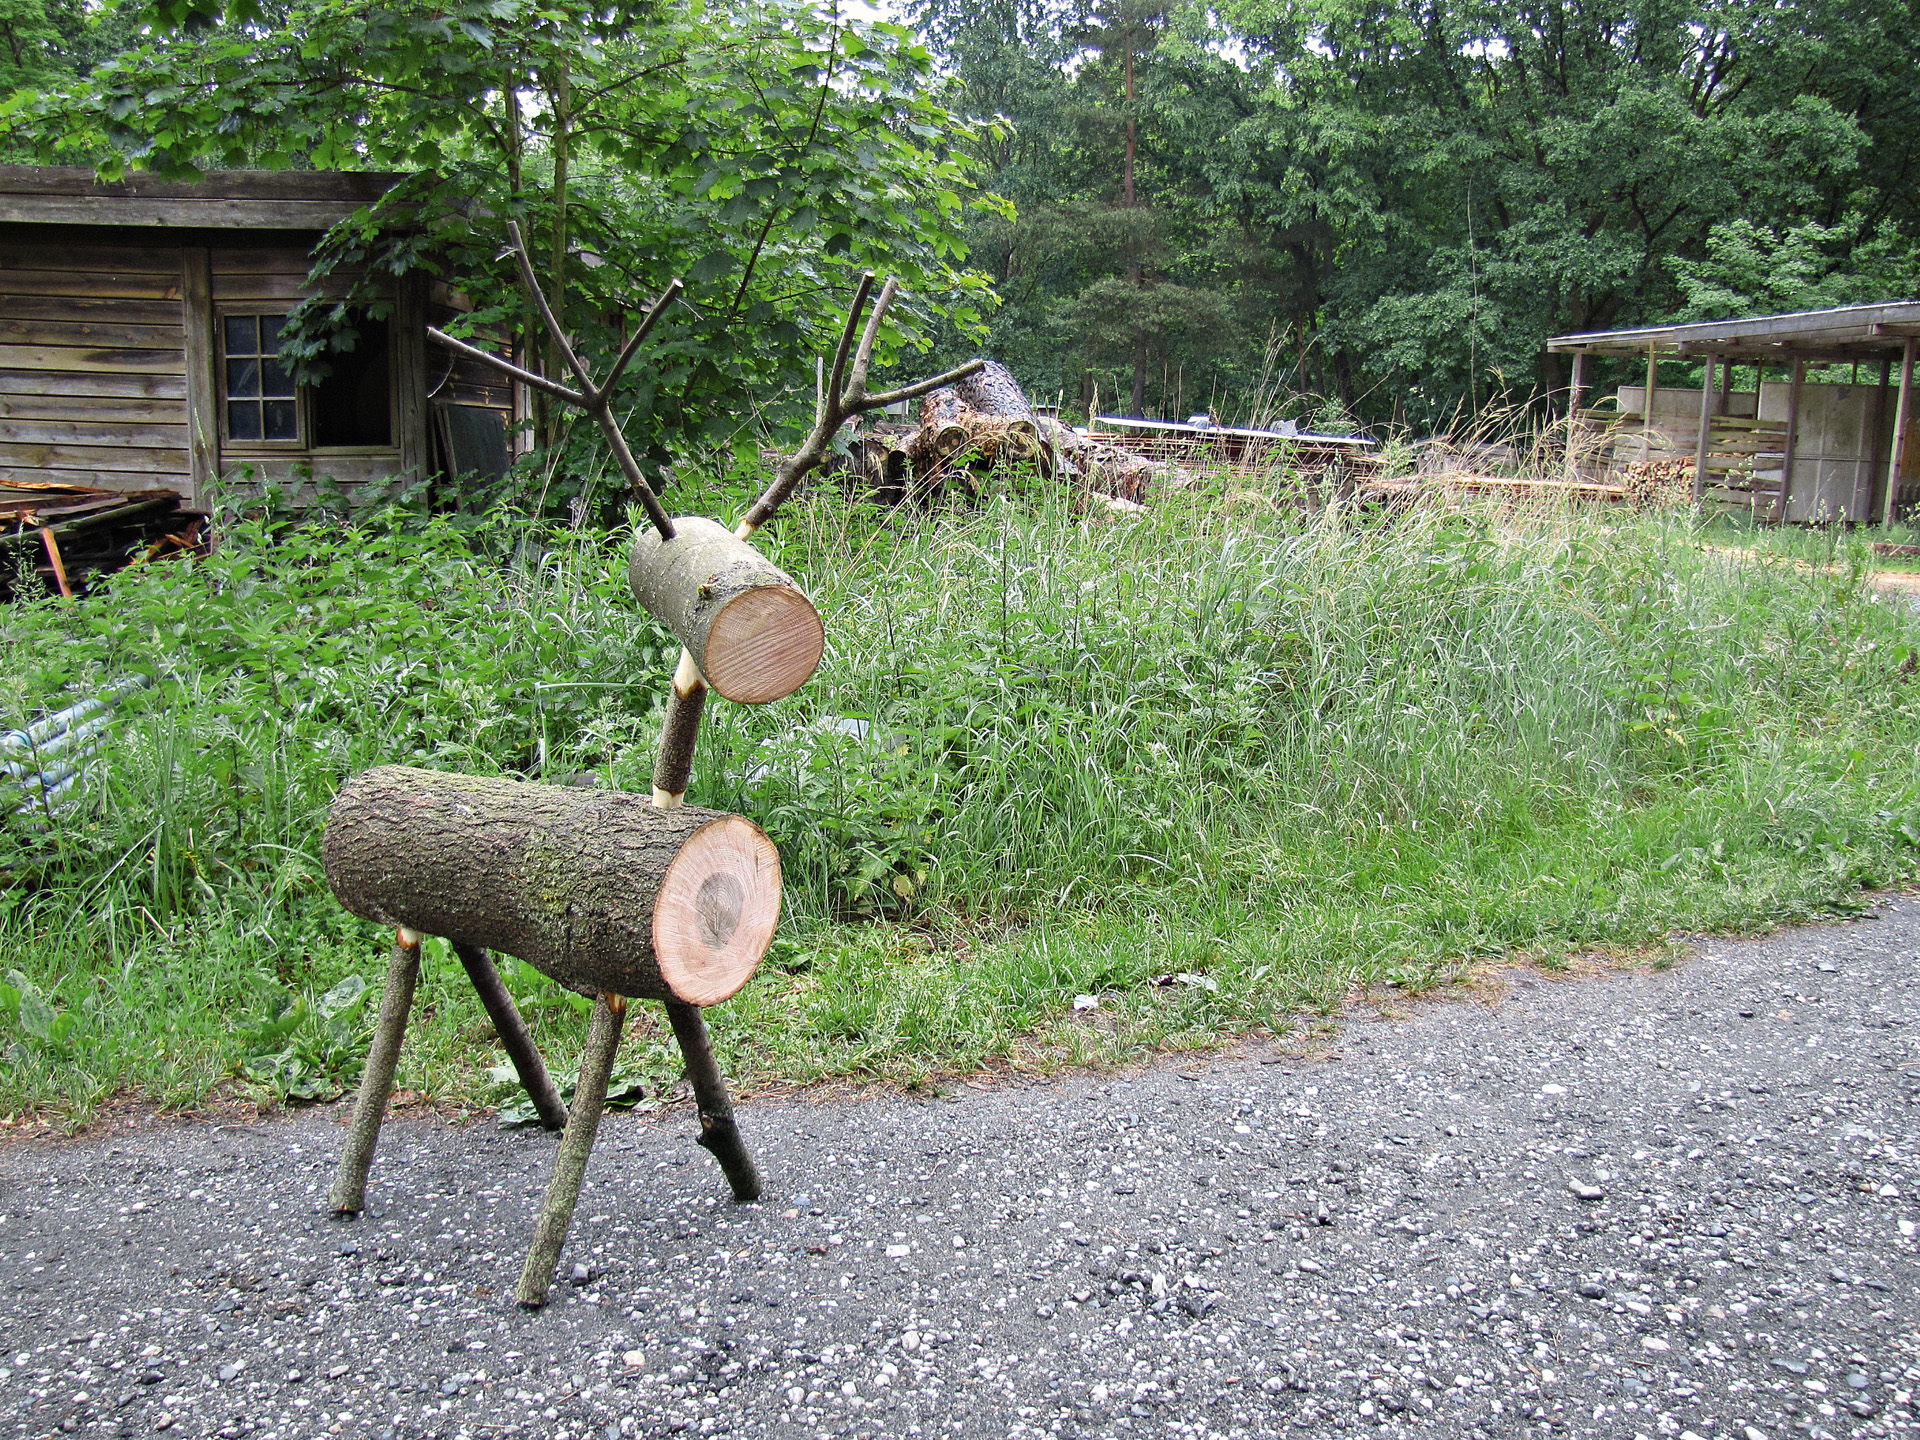 Rentier aus Holz vor grünem Rasen und Holzhütte